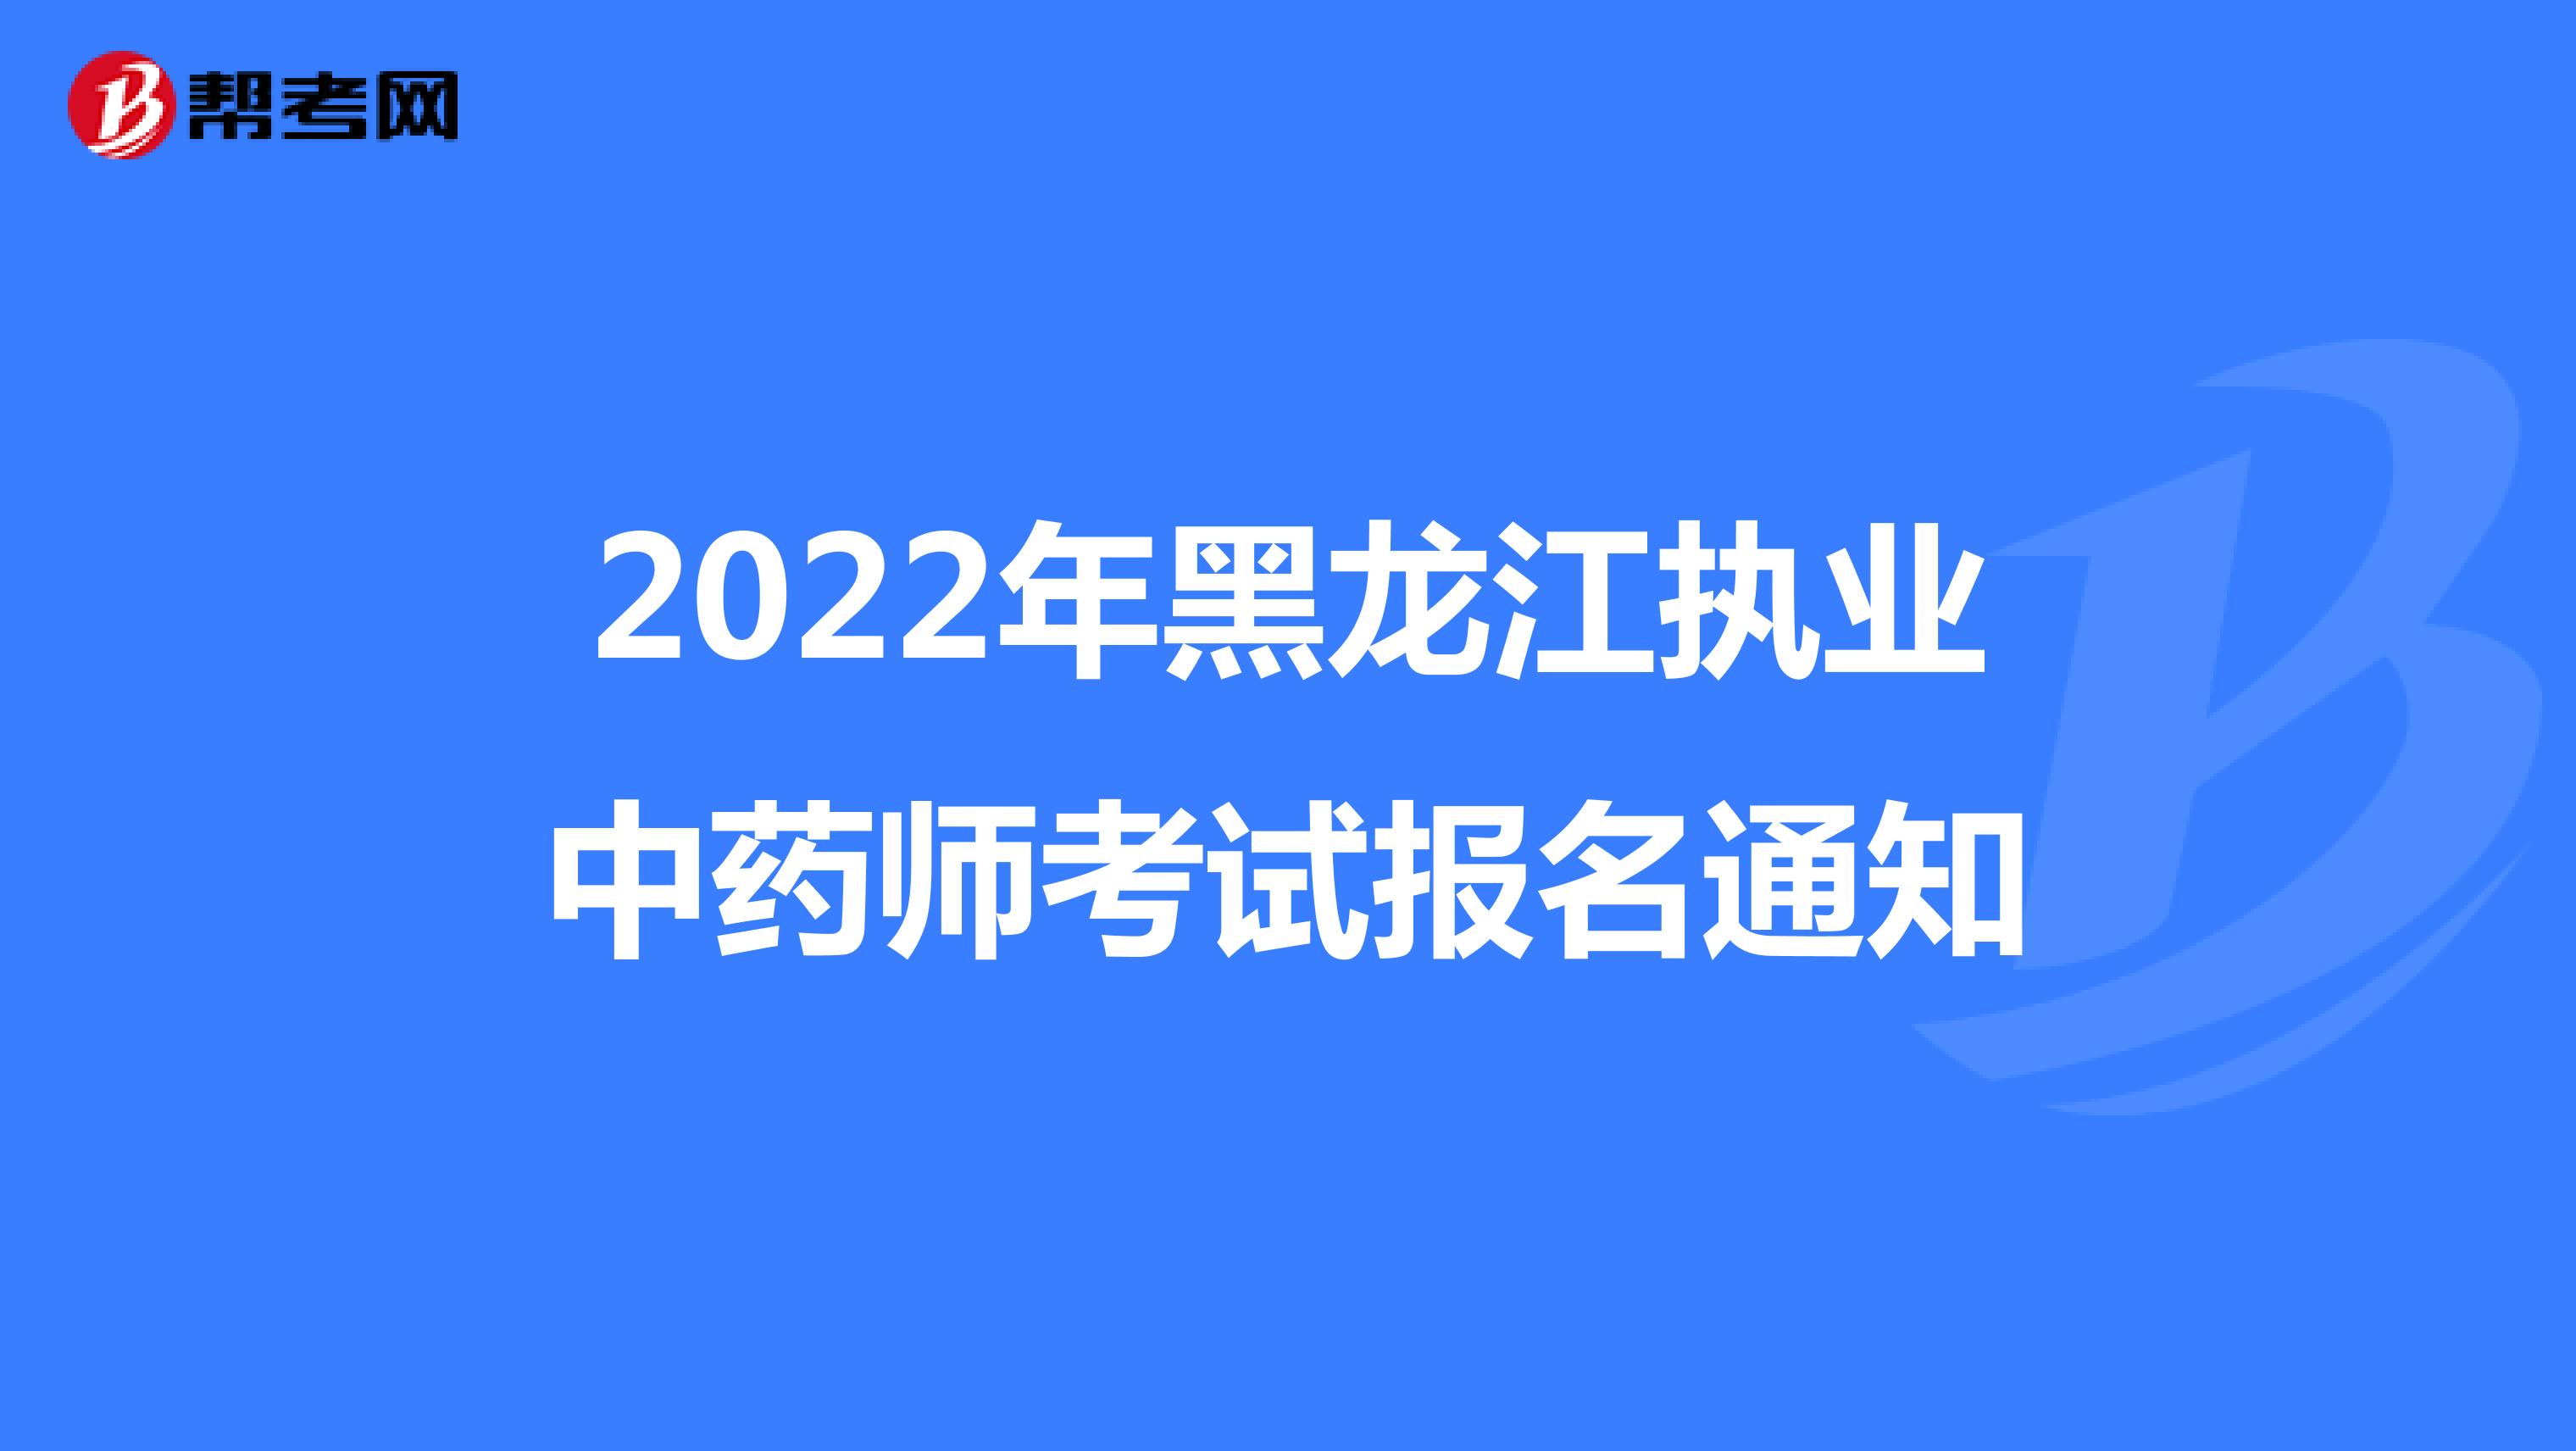 2022年黑龍江執業中藥師考試報名通知